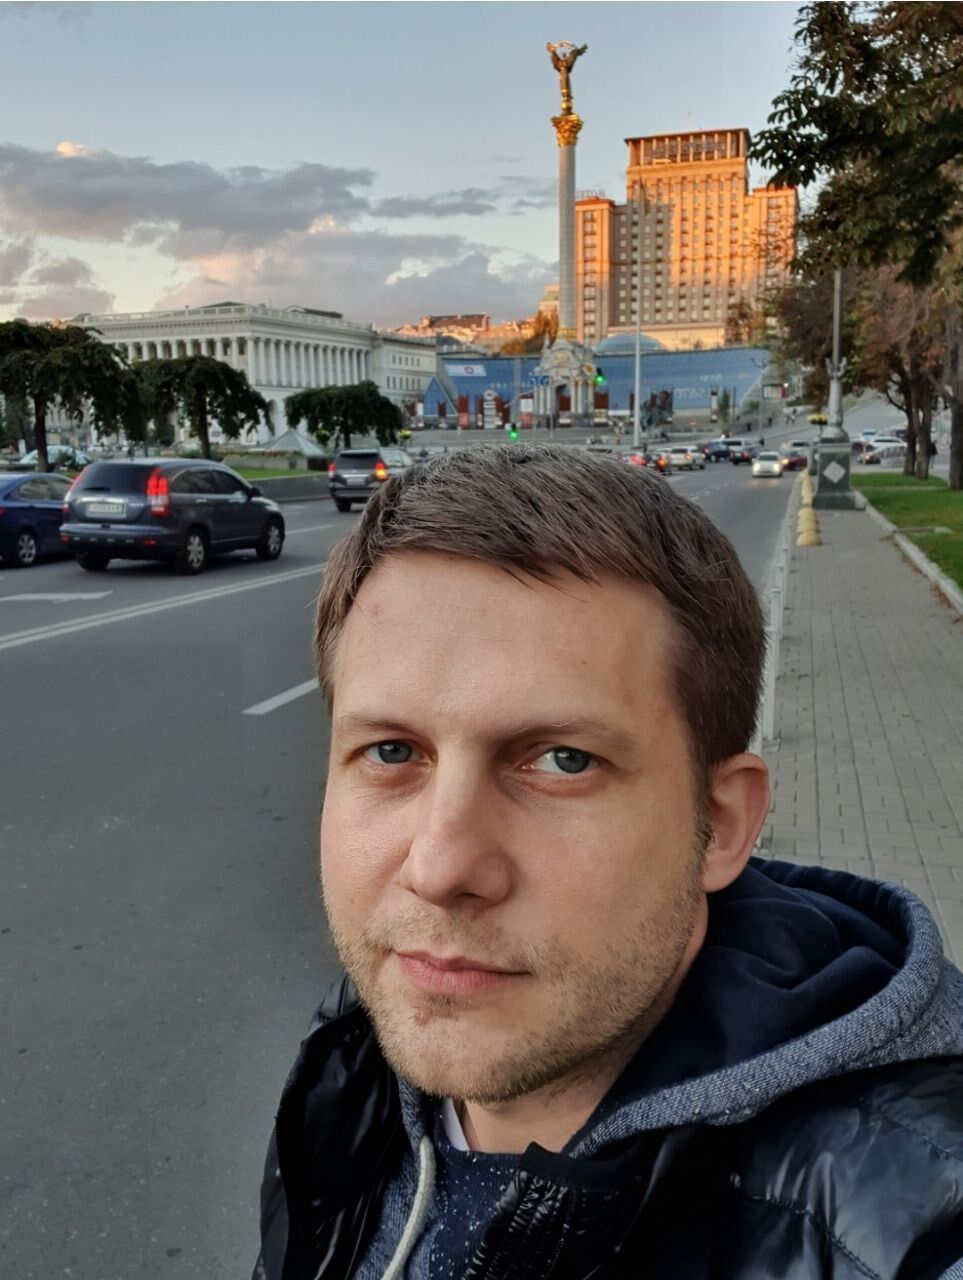 Пропагандист Корчевников заявил, что его дважды впускали в Украину после введения санкций на въезд и что скоро посетит Киев снова